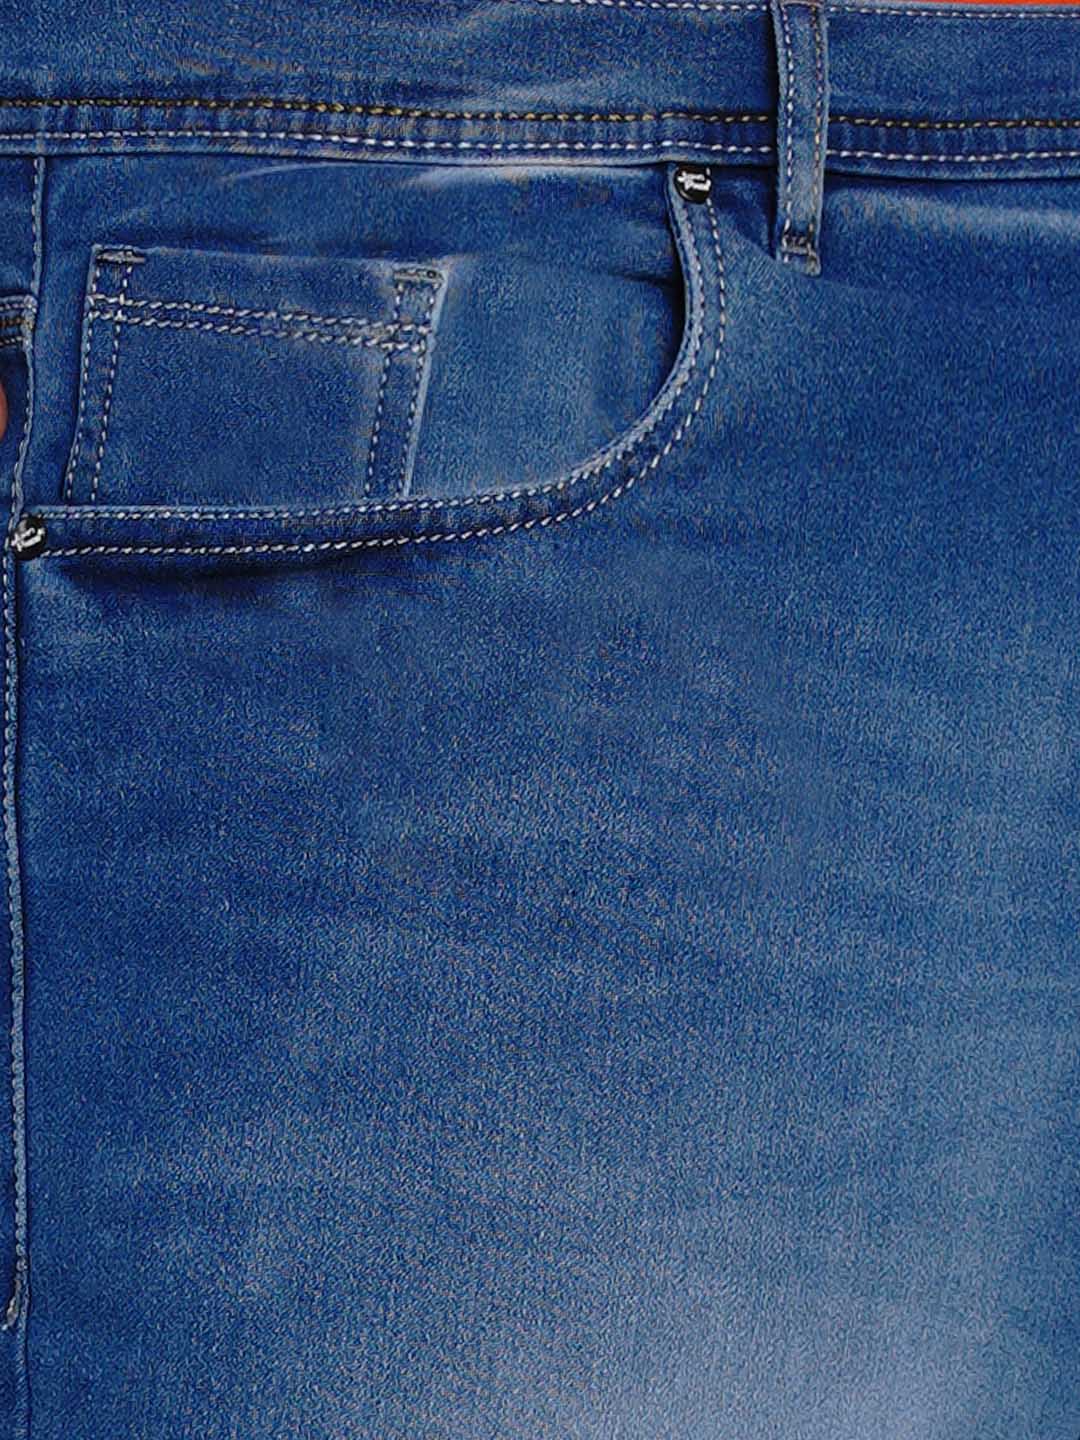 bottomwear/jeans/BEPLJPJ1276/bepljpj1276-5.jpg